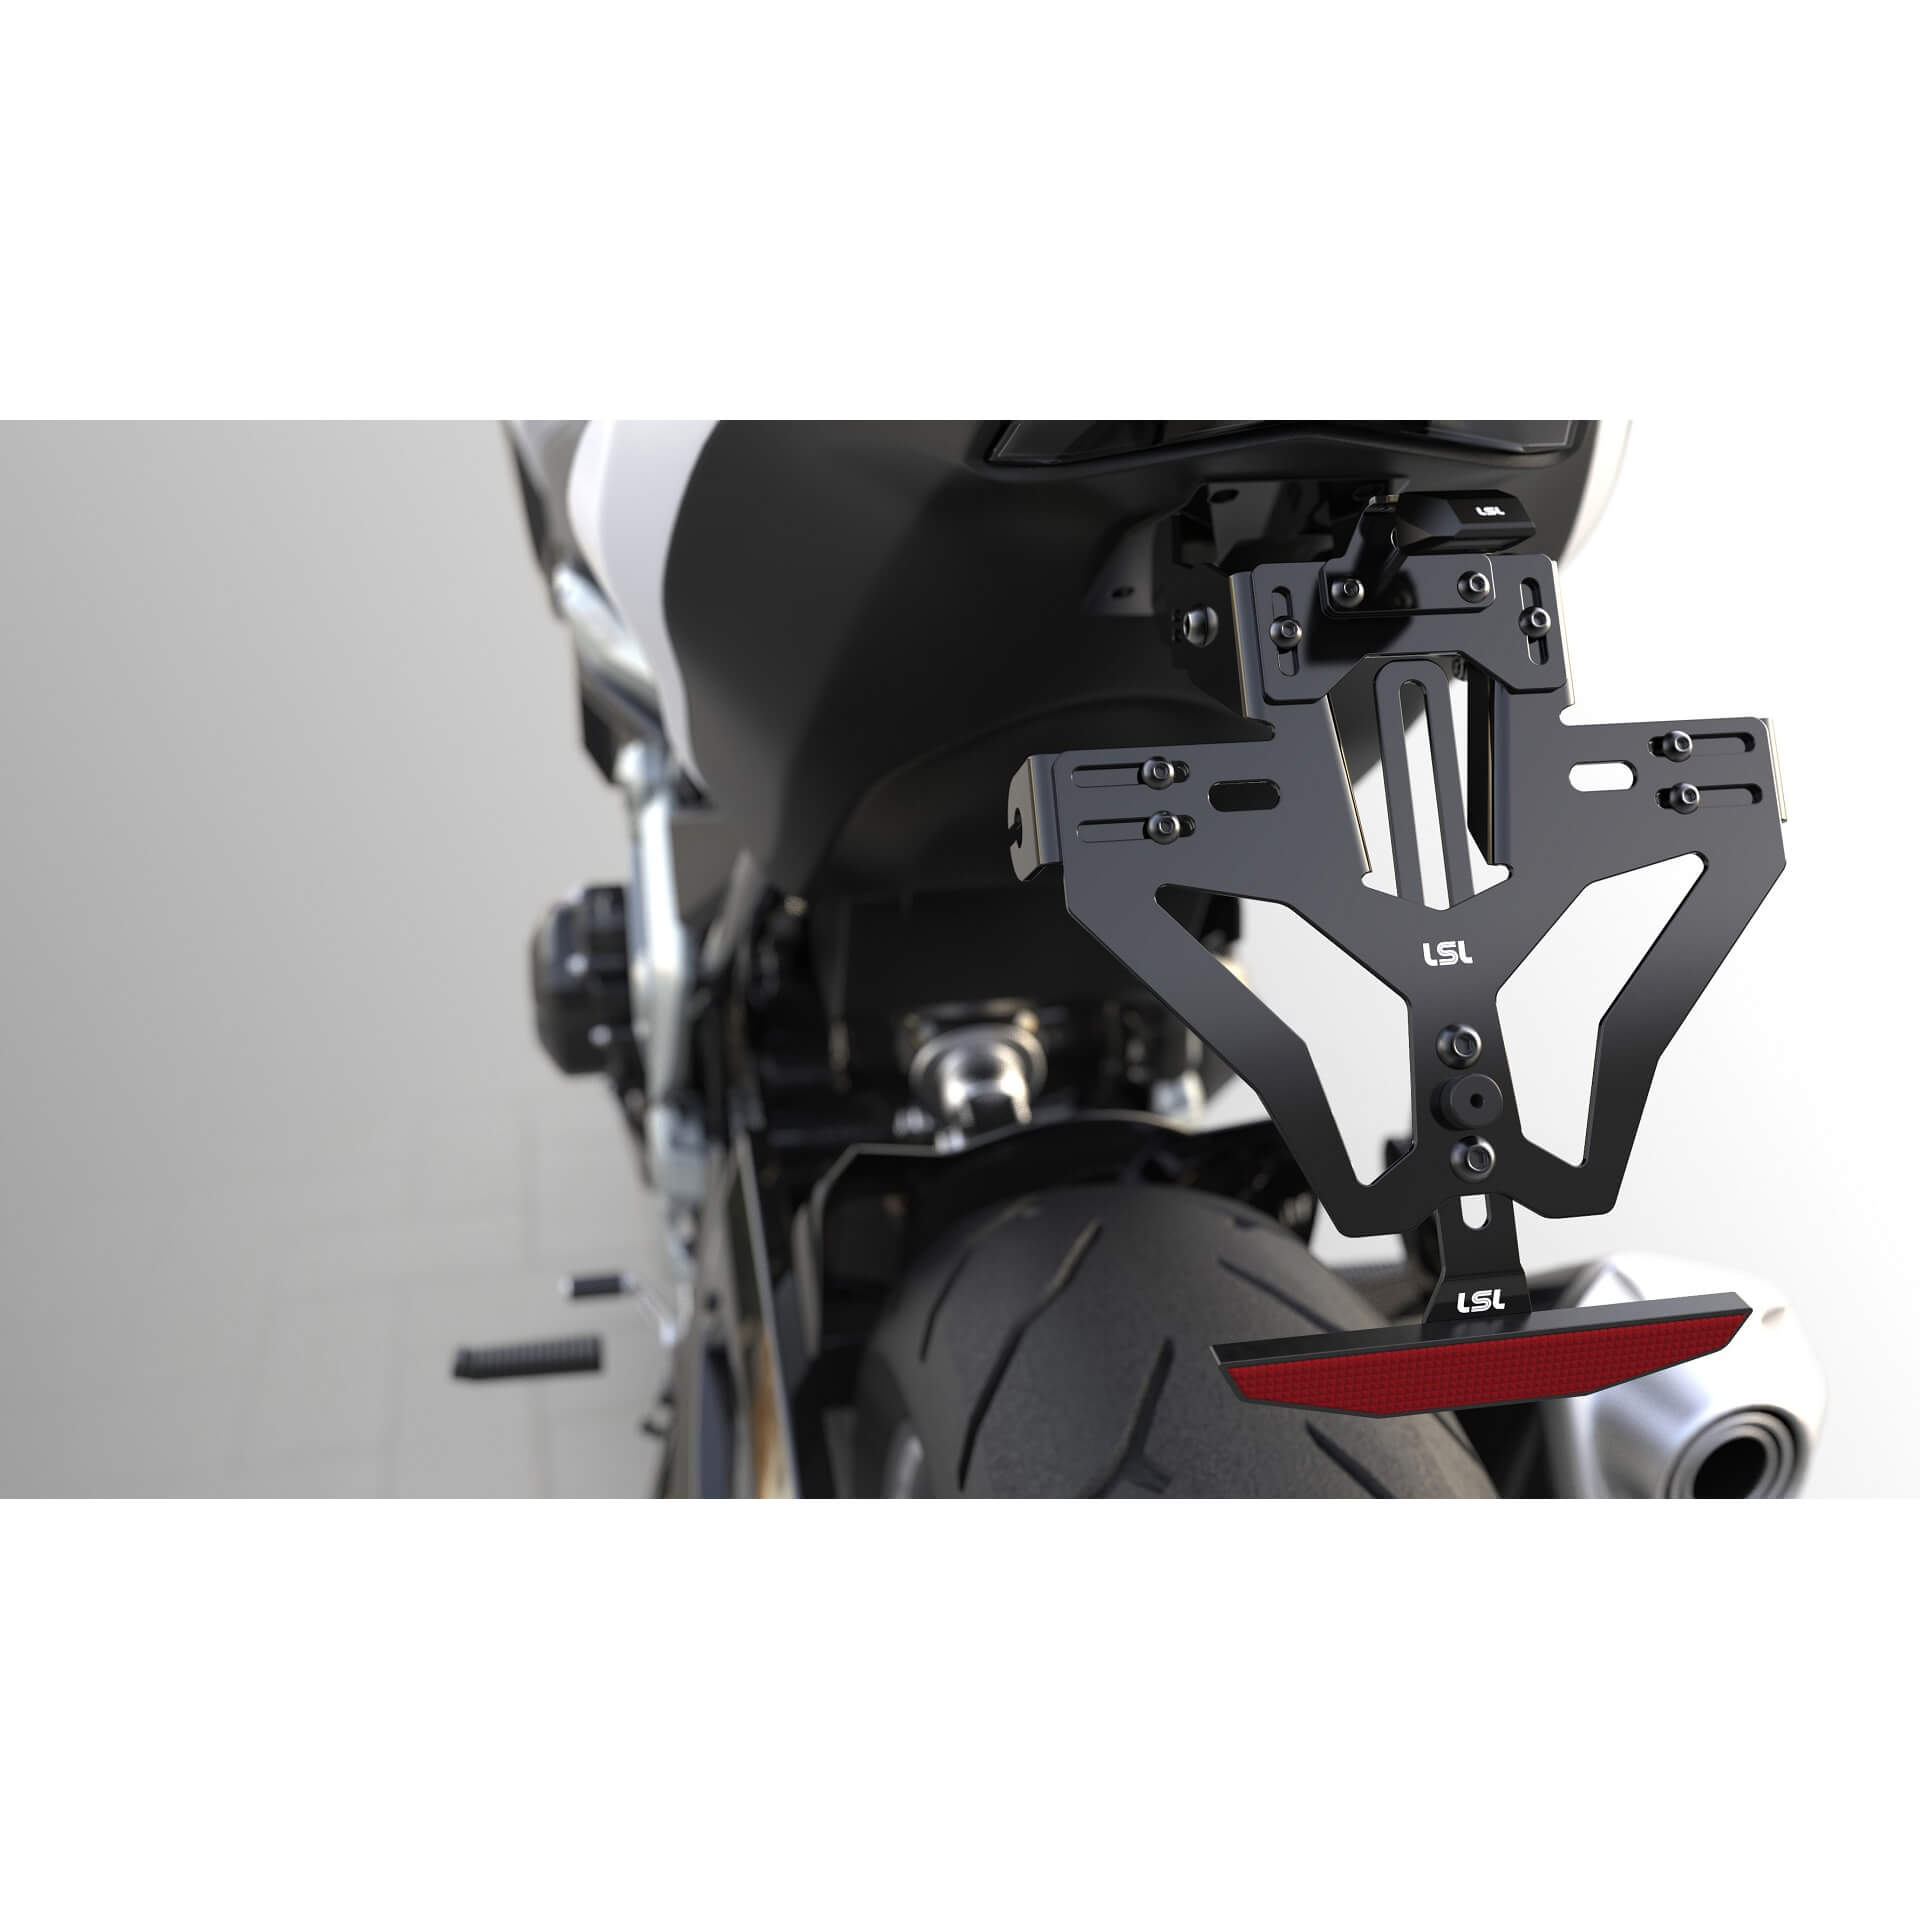 lsl MANTIS-RS PRO für Ducati Monster, inkl. Kennzeichenbeleuchtung